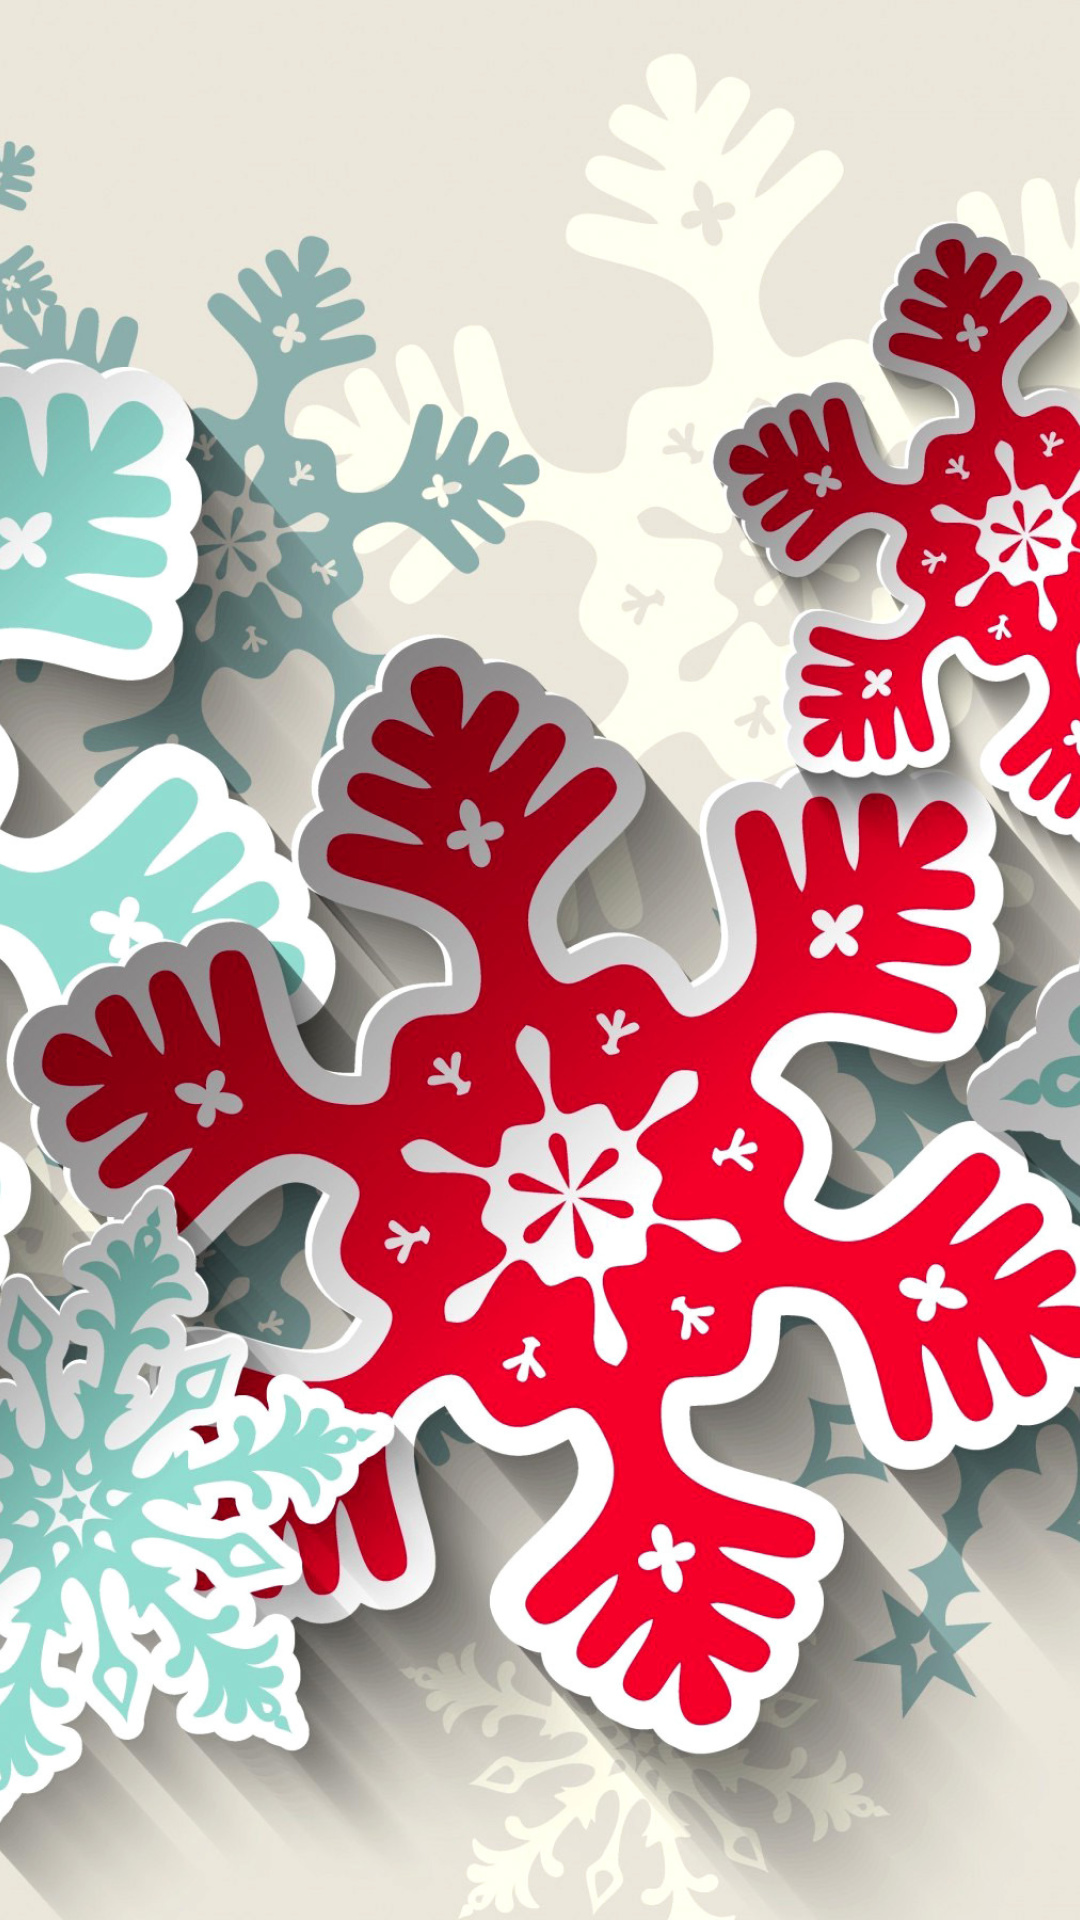 Das Snowflakes Decoration Wallpaper 1080x1920